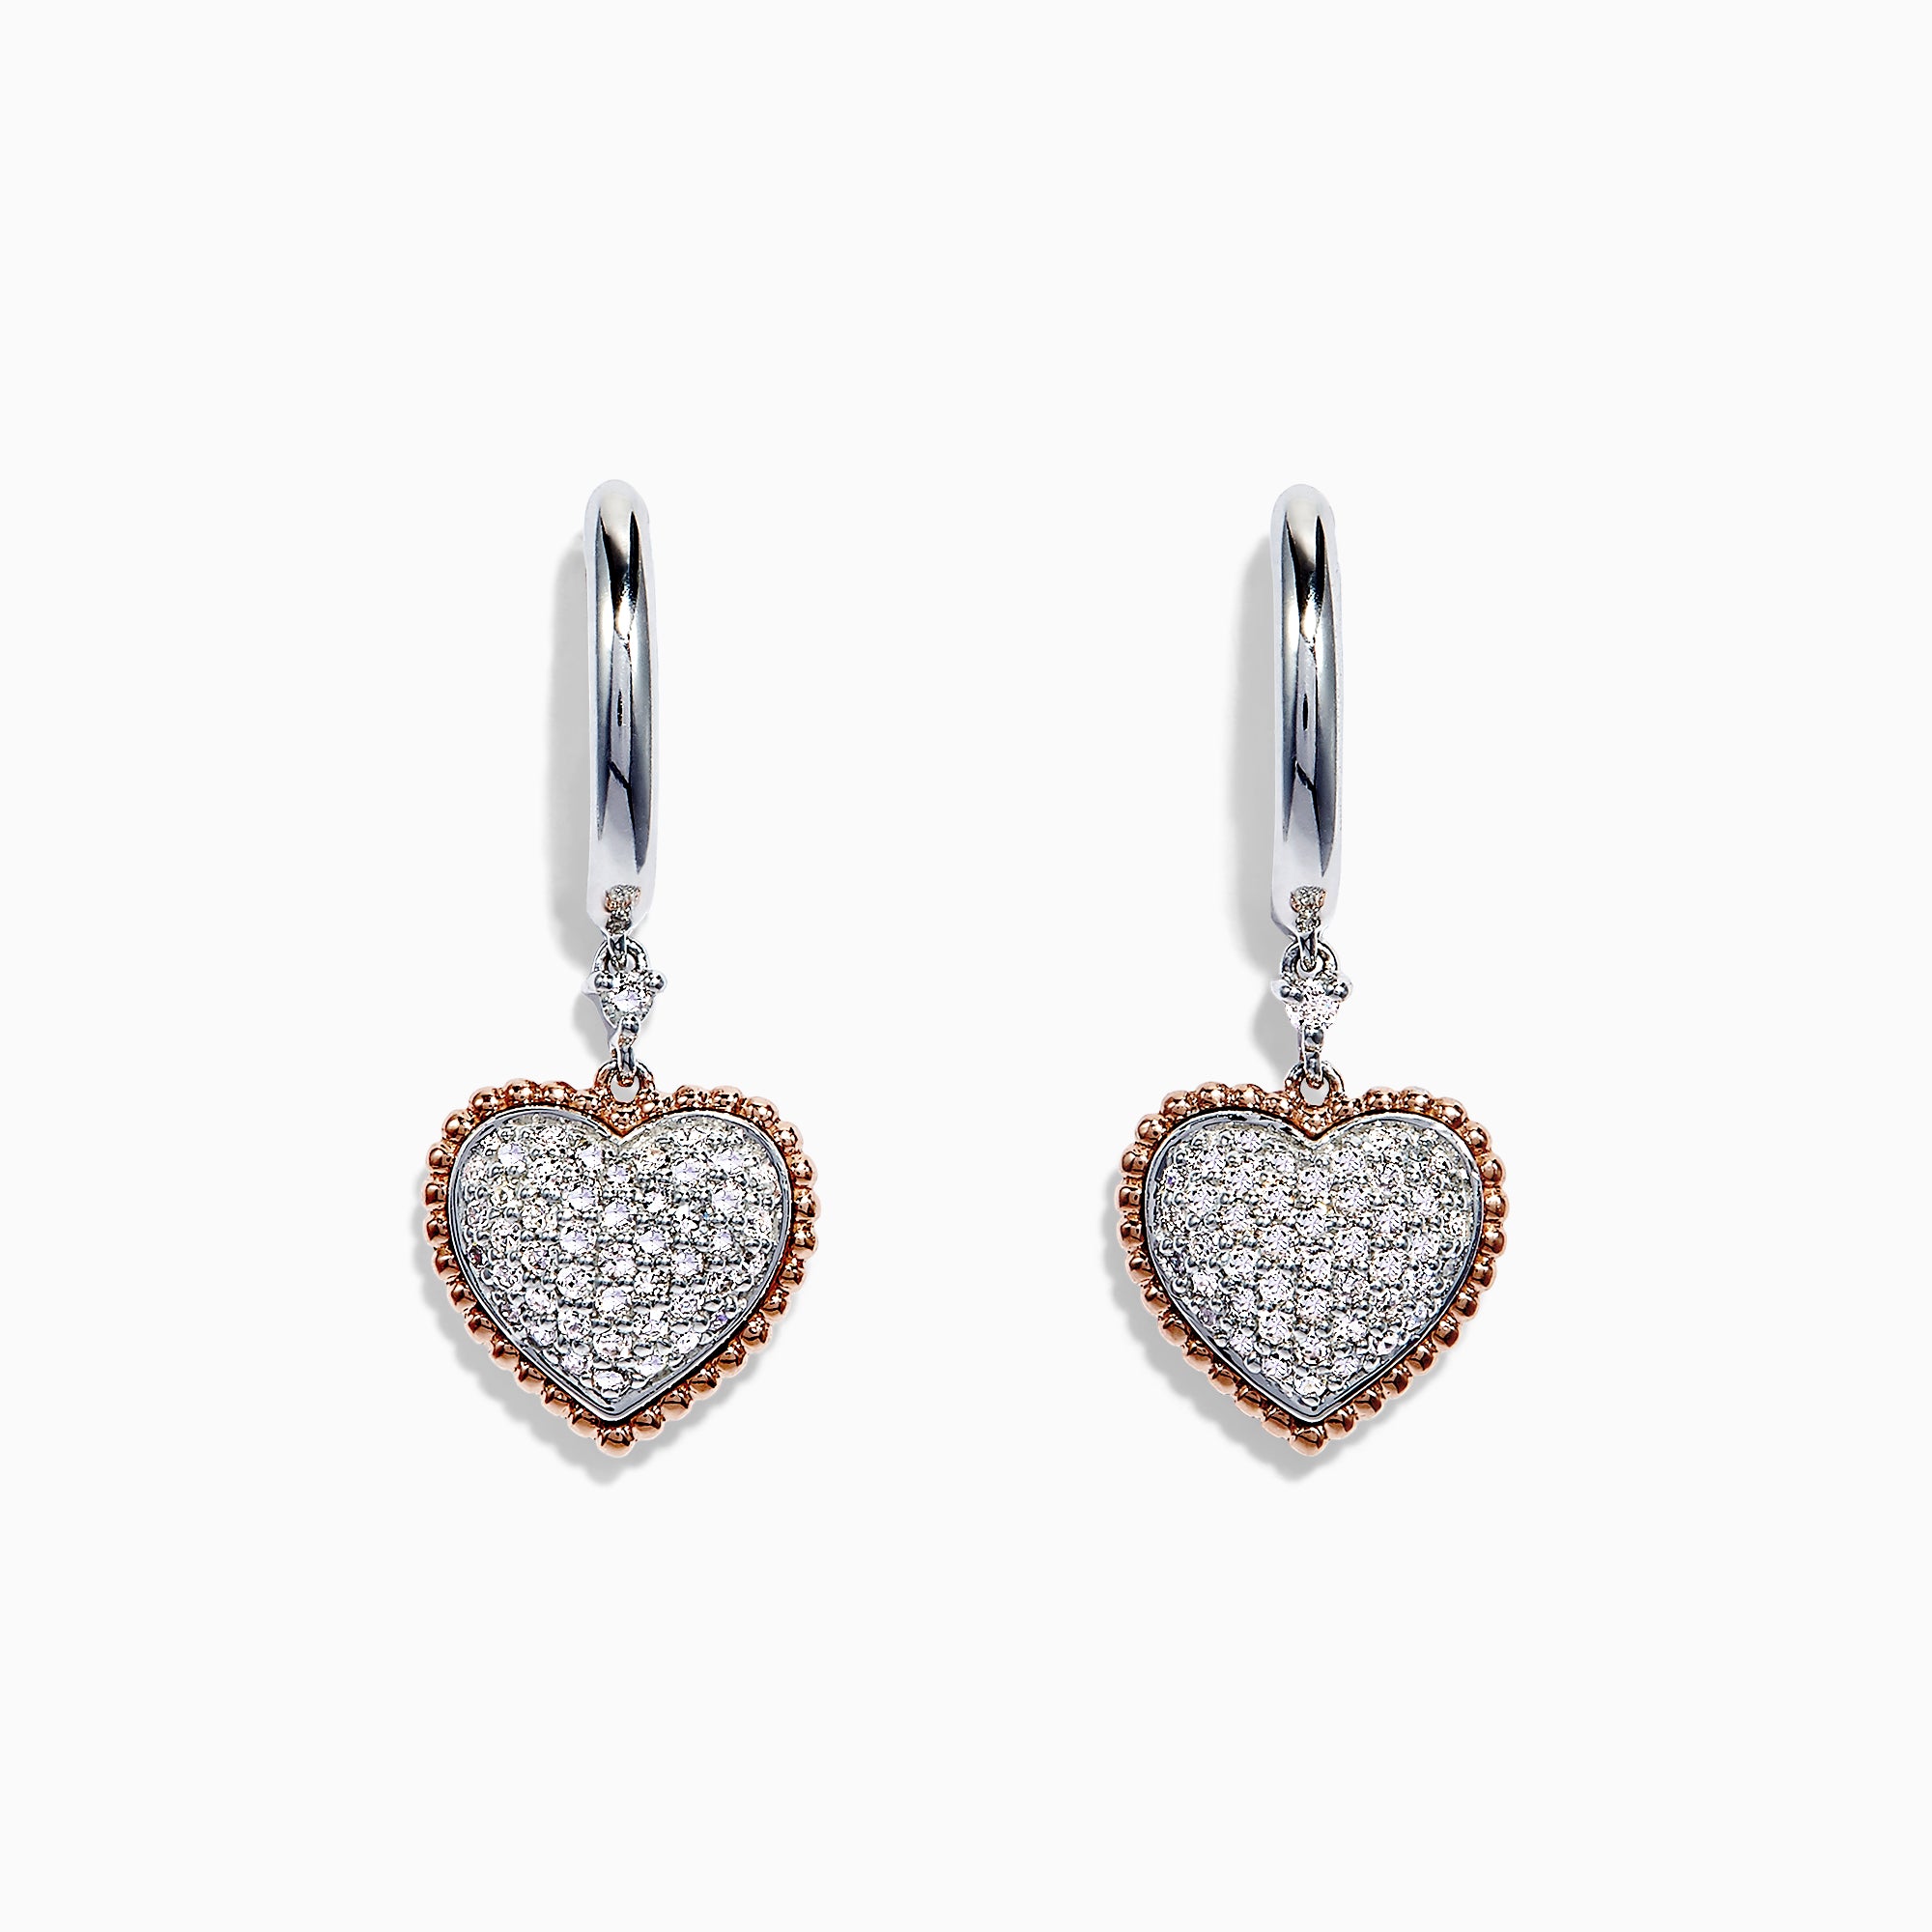 Effy Novelty 14K Two Tone Gold Diamond Heart Drop Earrings, 0.37 TCW